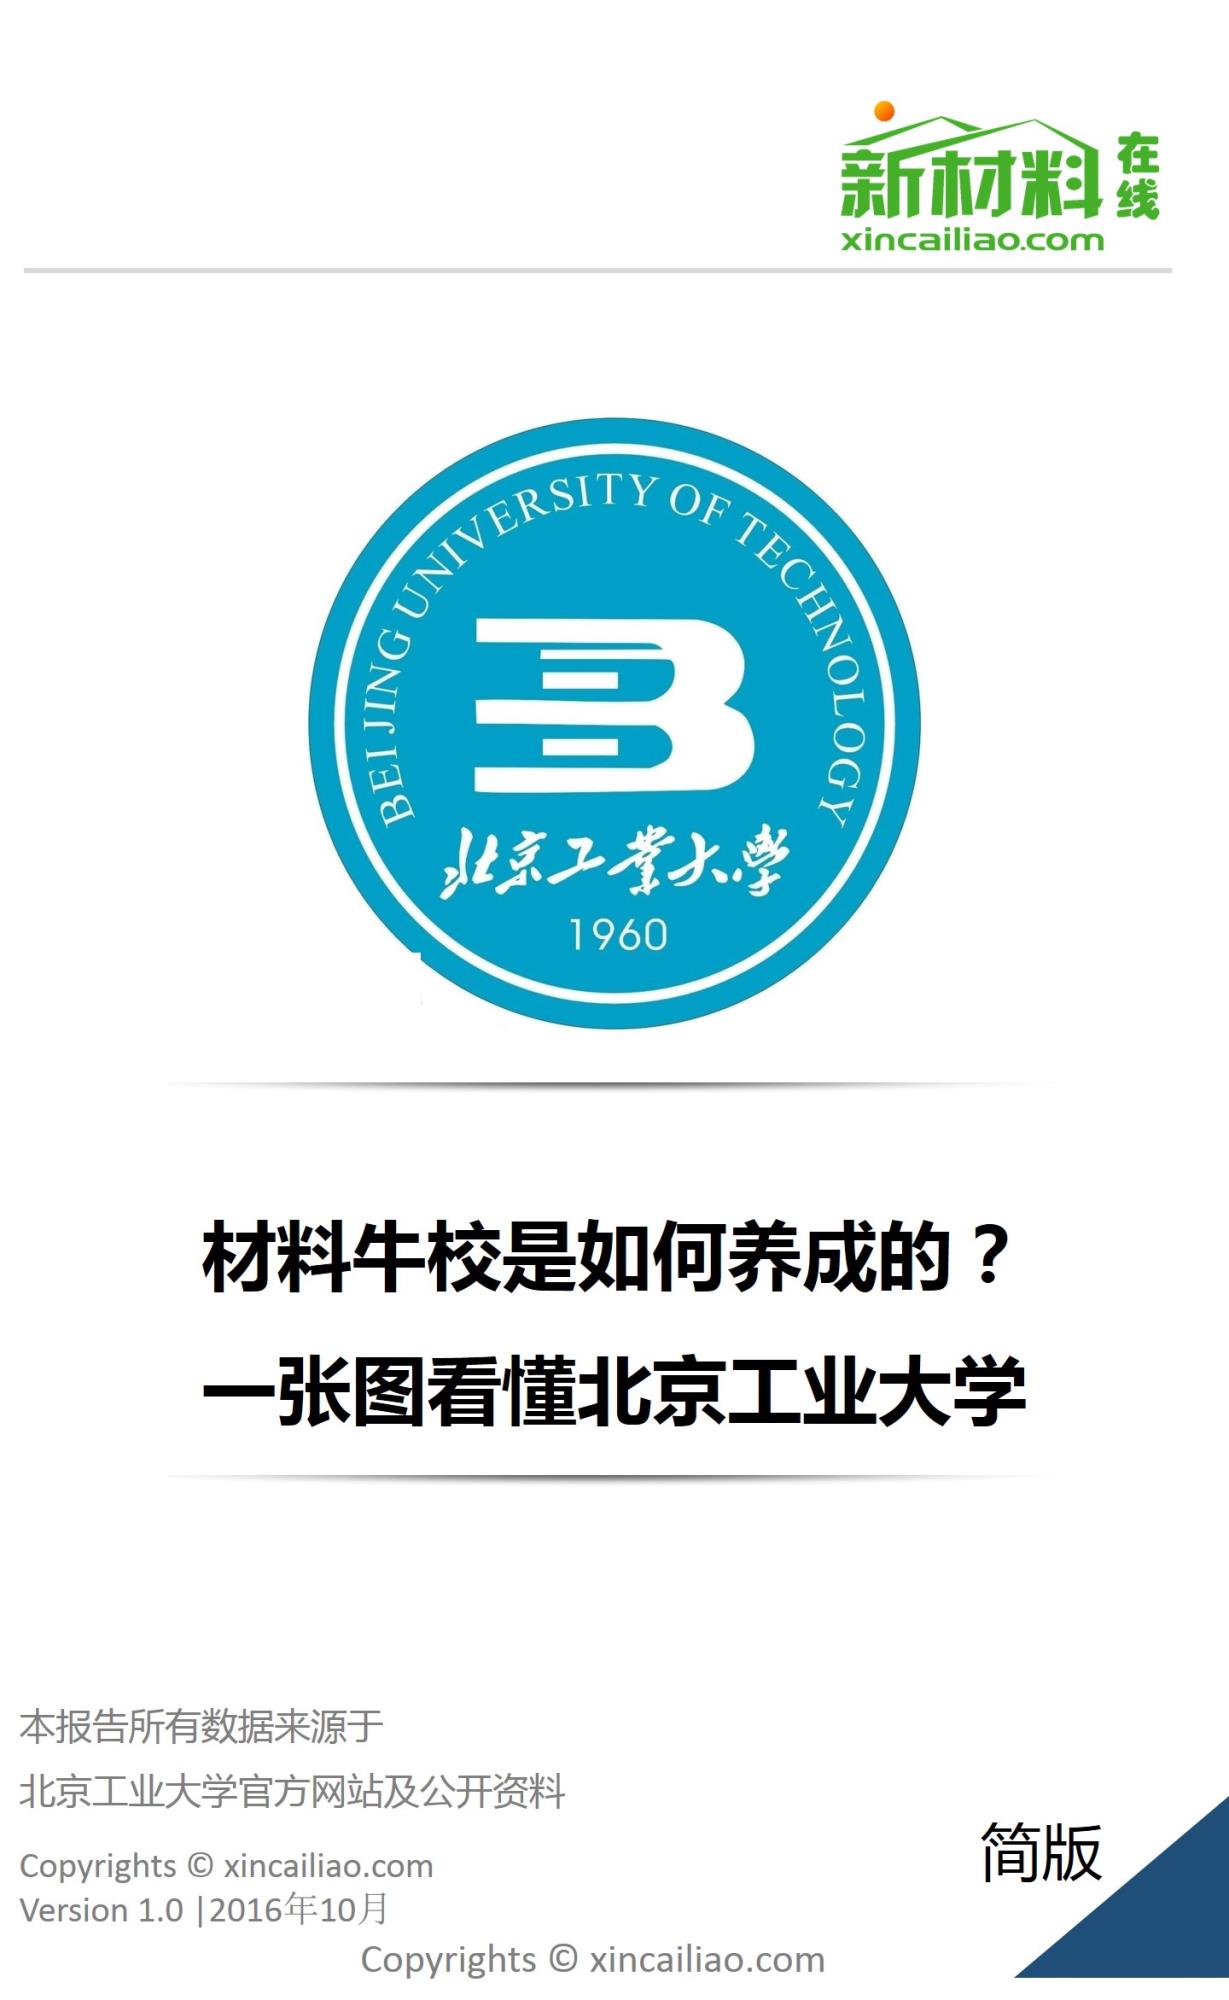 北京工业大学图标图片